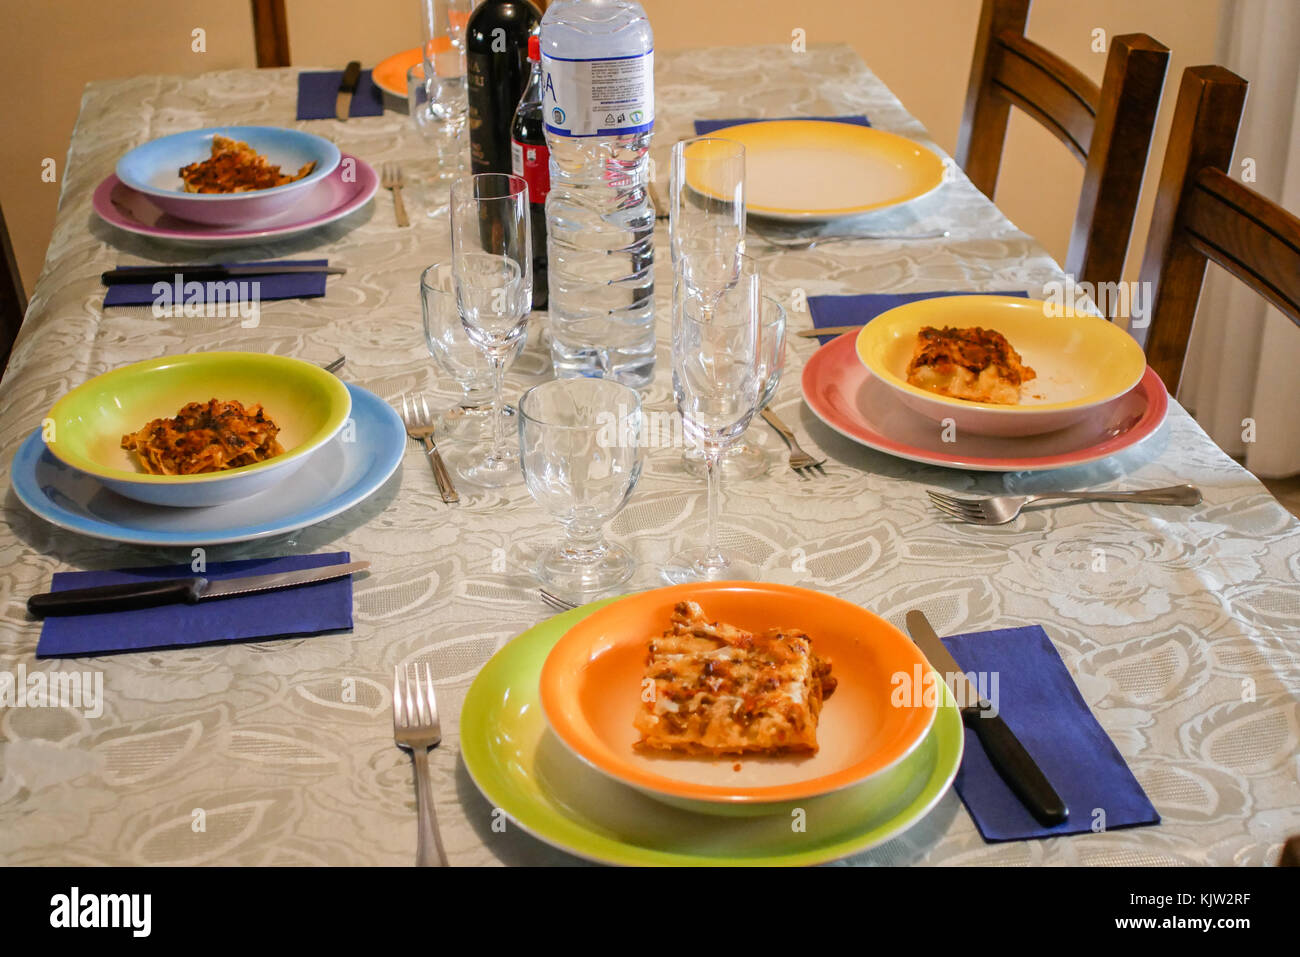 Plat de lasagne, typique de la culture italienne, des aliments prêts à être consommés, saison d'hiver. Version de la viande. Florence, Italie Banque D'Images